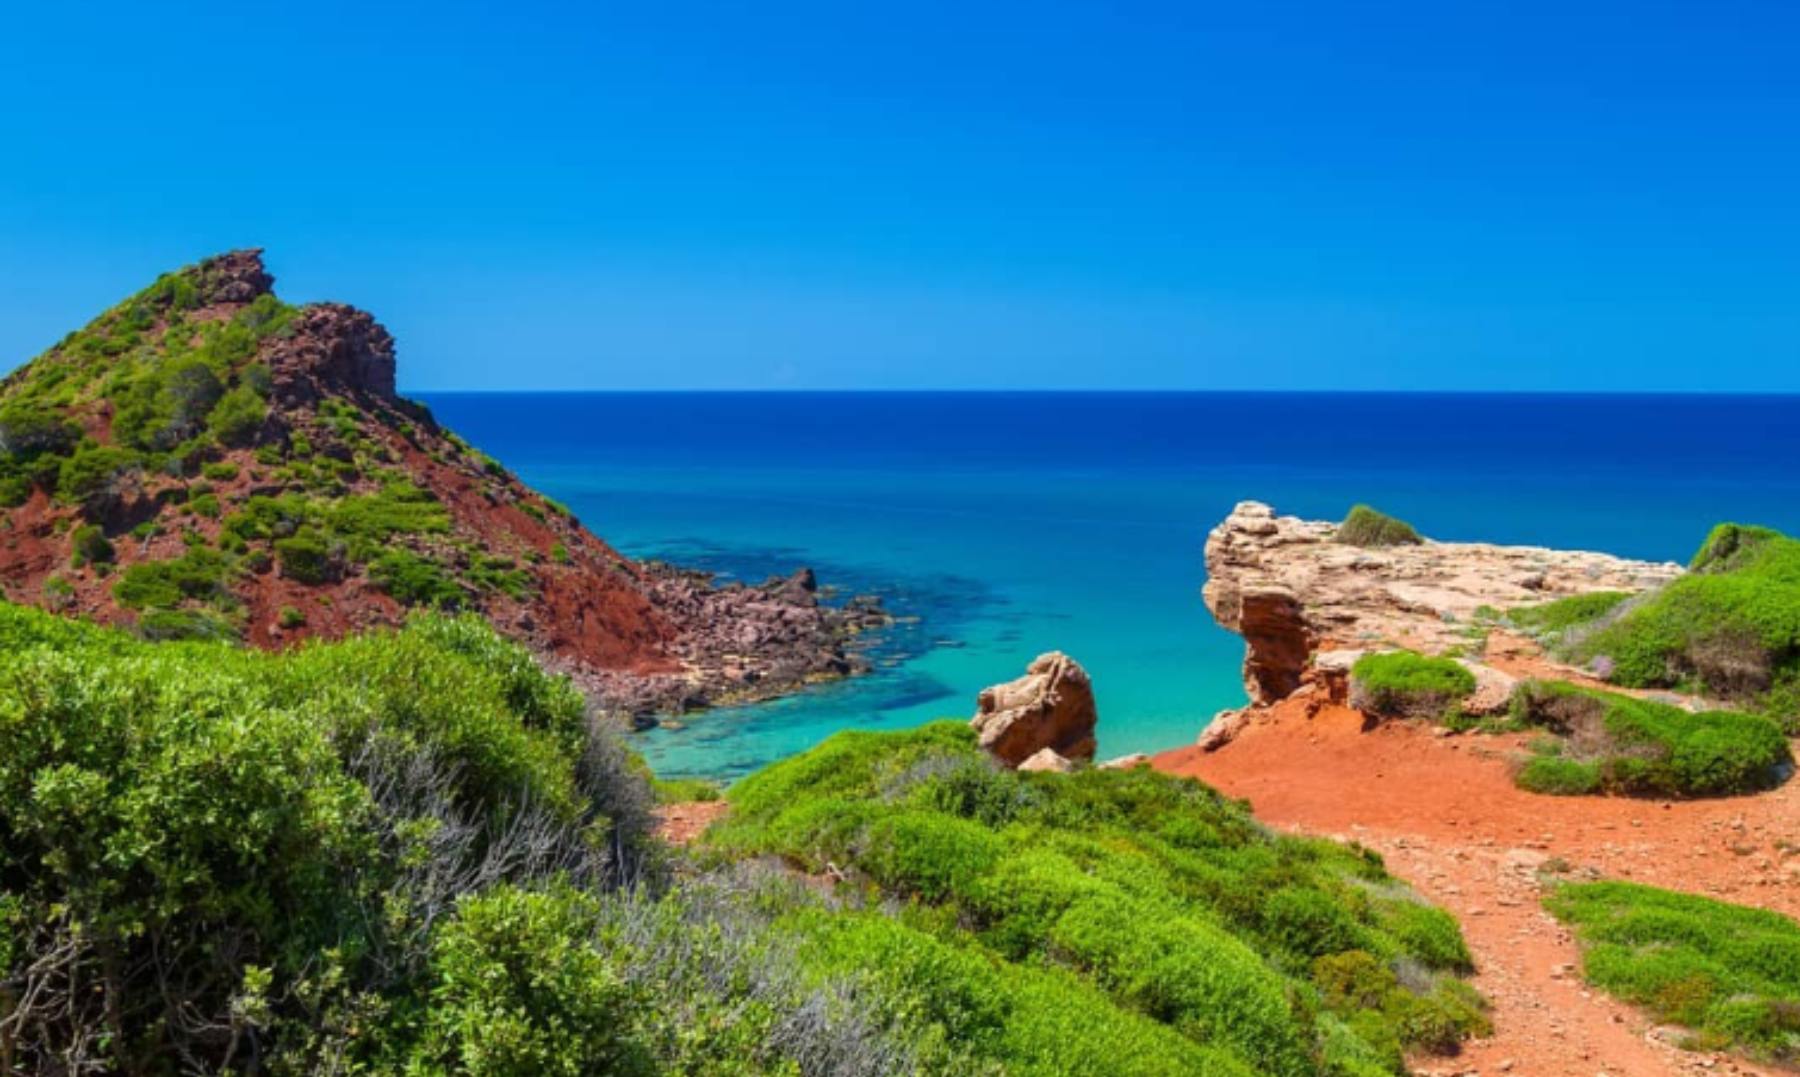 La playa virgen de Menorca con difícil acceso pero ubicada en un paraje natural increíble